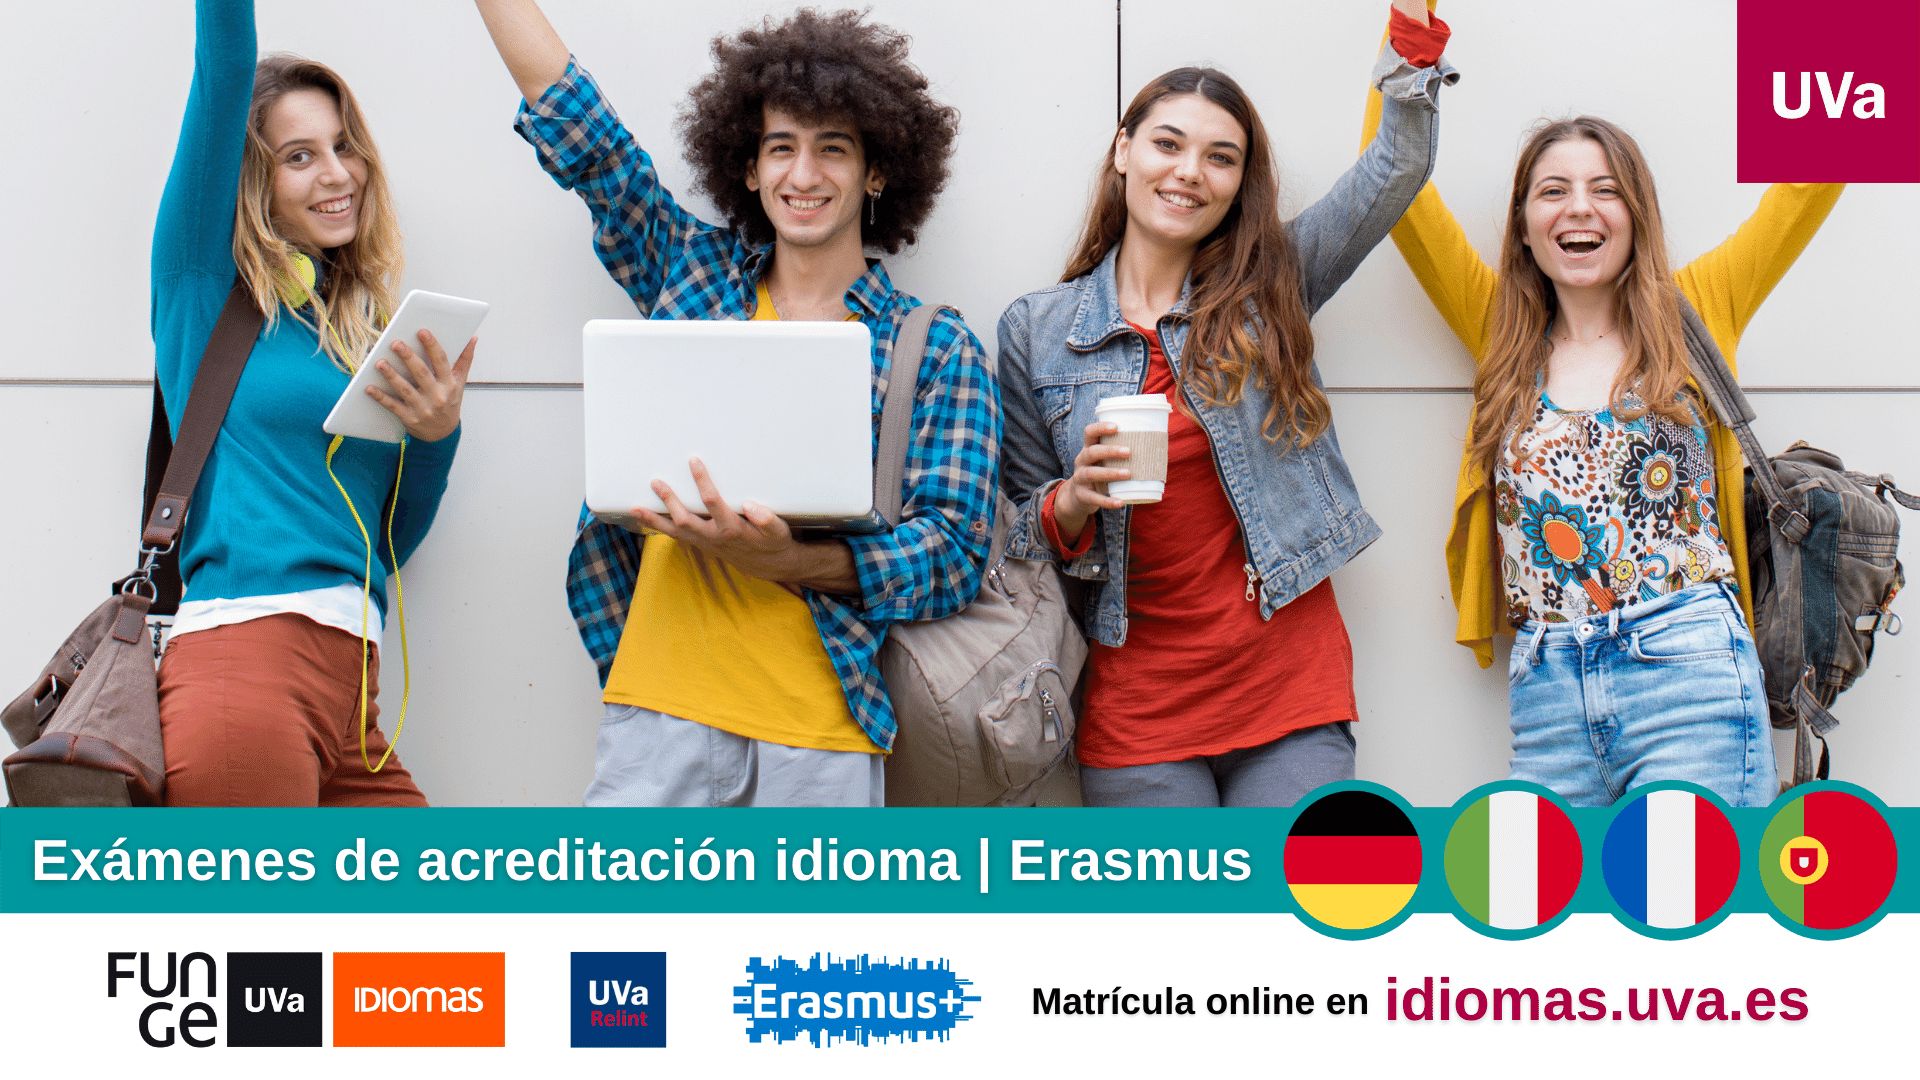 Examenes de acreditacion idiomas Erasmus frances aleman italiano portugues Centro de Idiomas Universidad de Valladolid